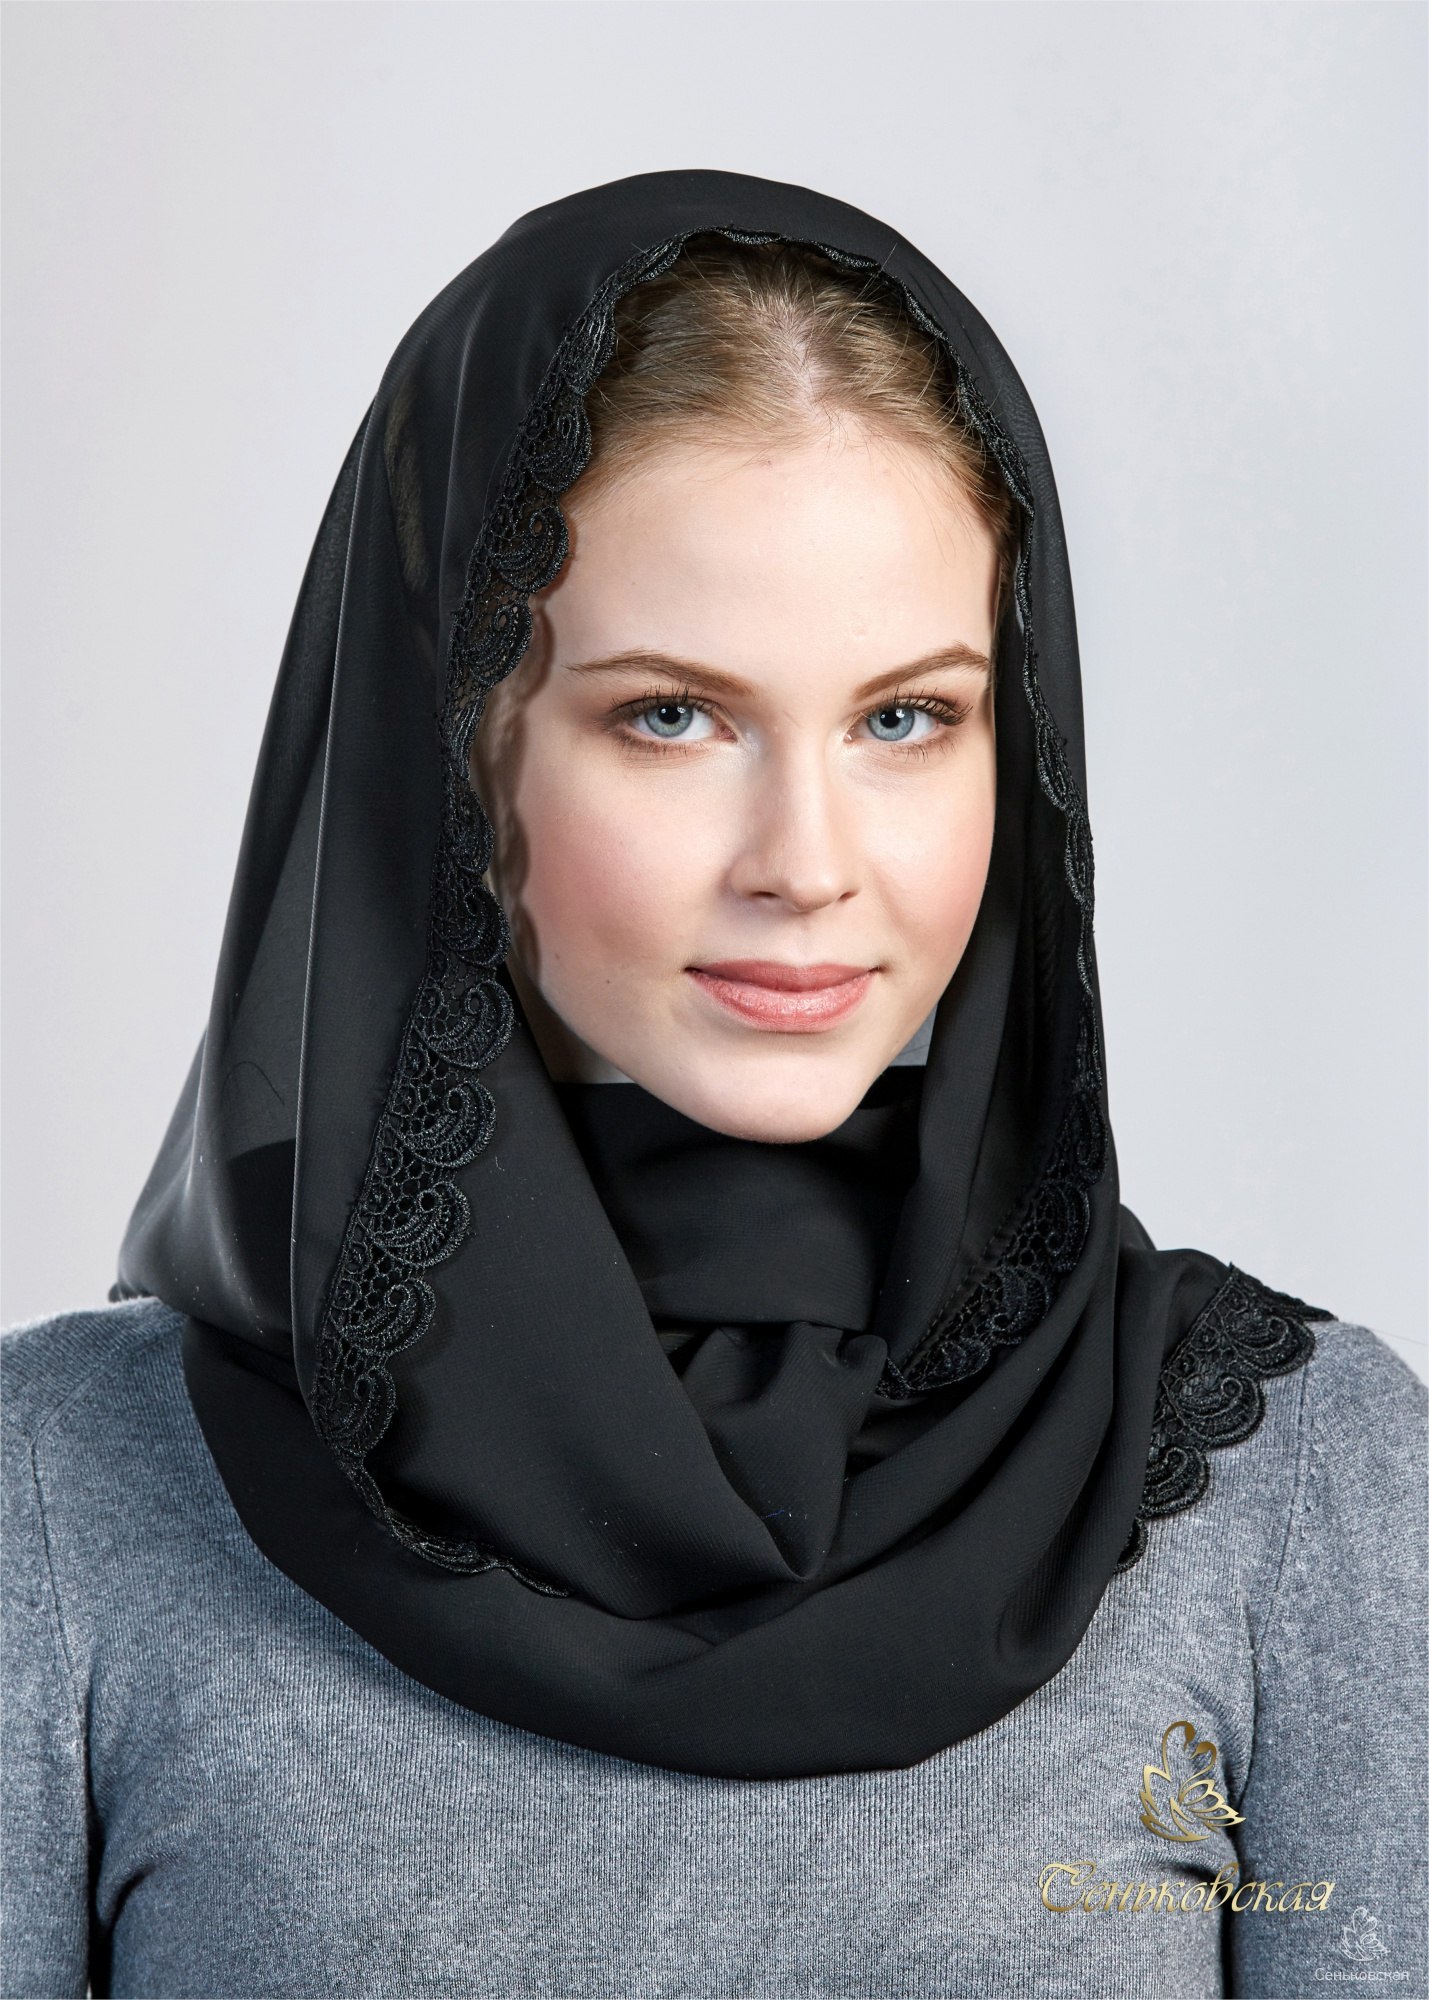 Траурный платок на голову. Платок. Женщина в черном платке. Черный платок. Платок женский на голову.